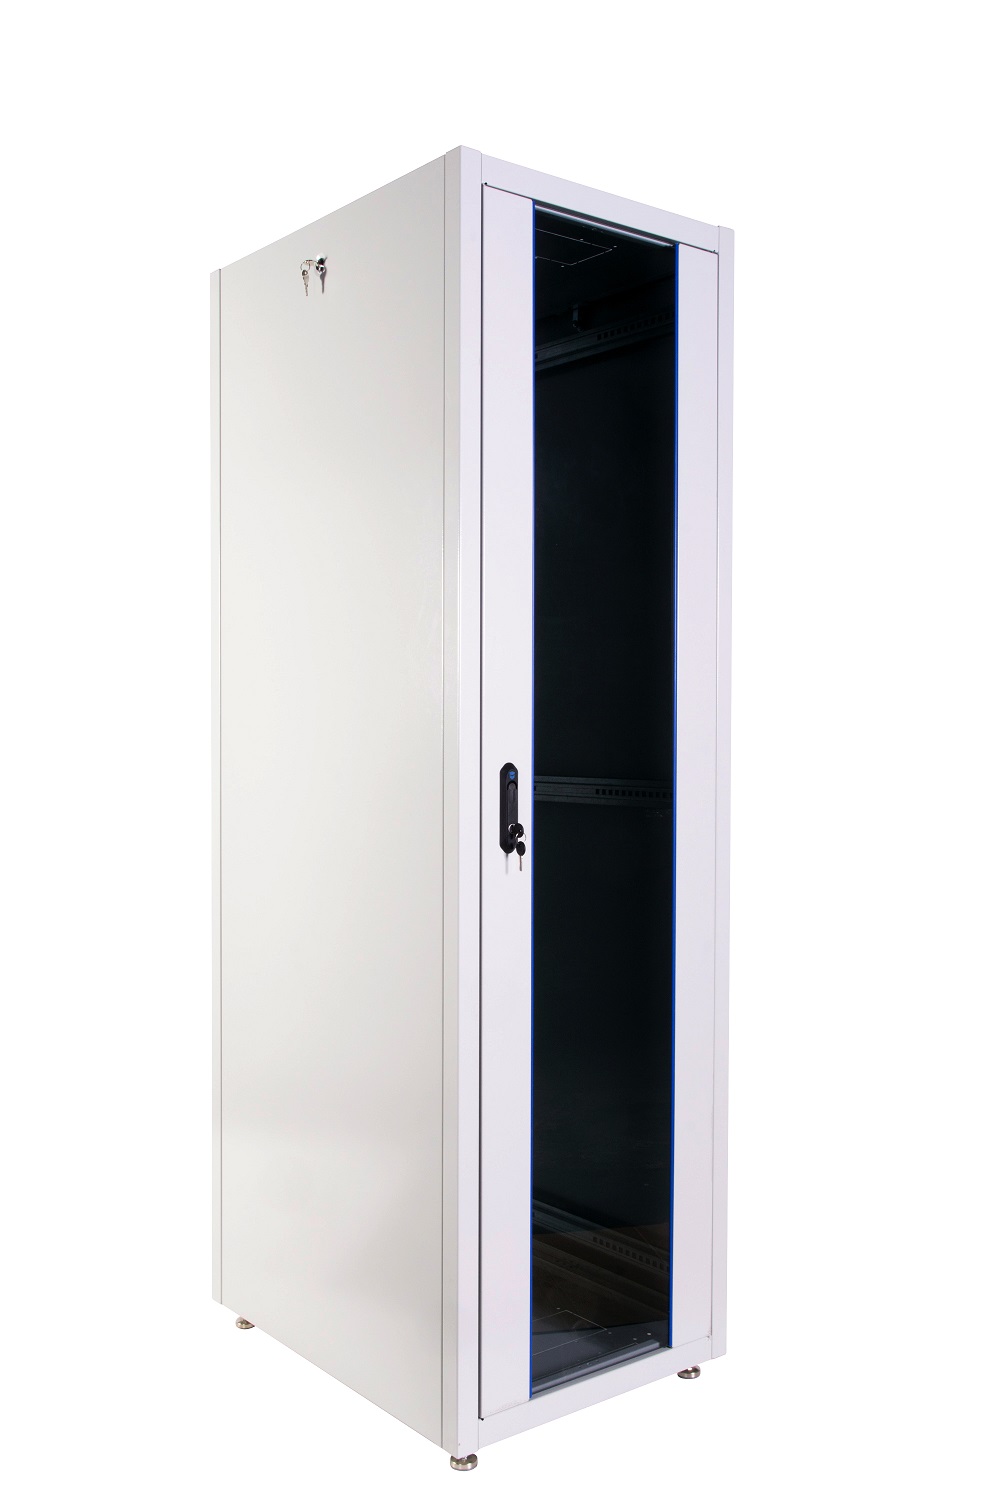  Купить Шкаф телекоммуникационный напольный ЭКОНОМ 42U (800 ×800) дверь стекло, дверь металл